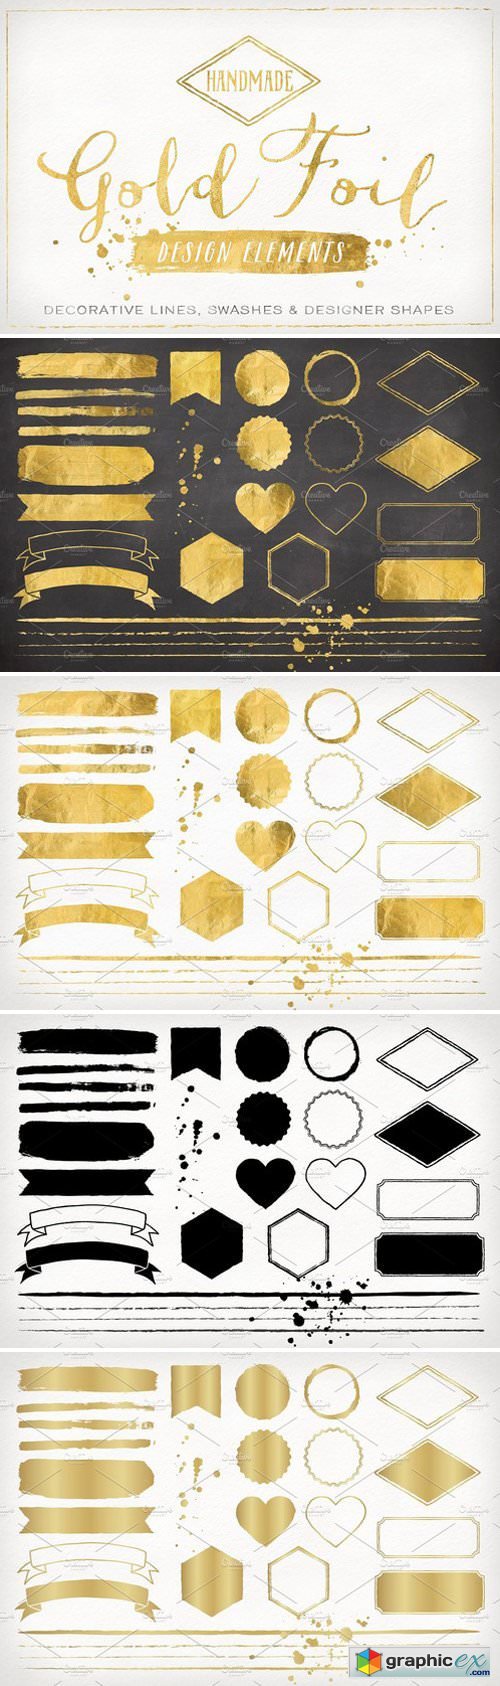 Gold Foil Design Elements & Vectors